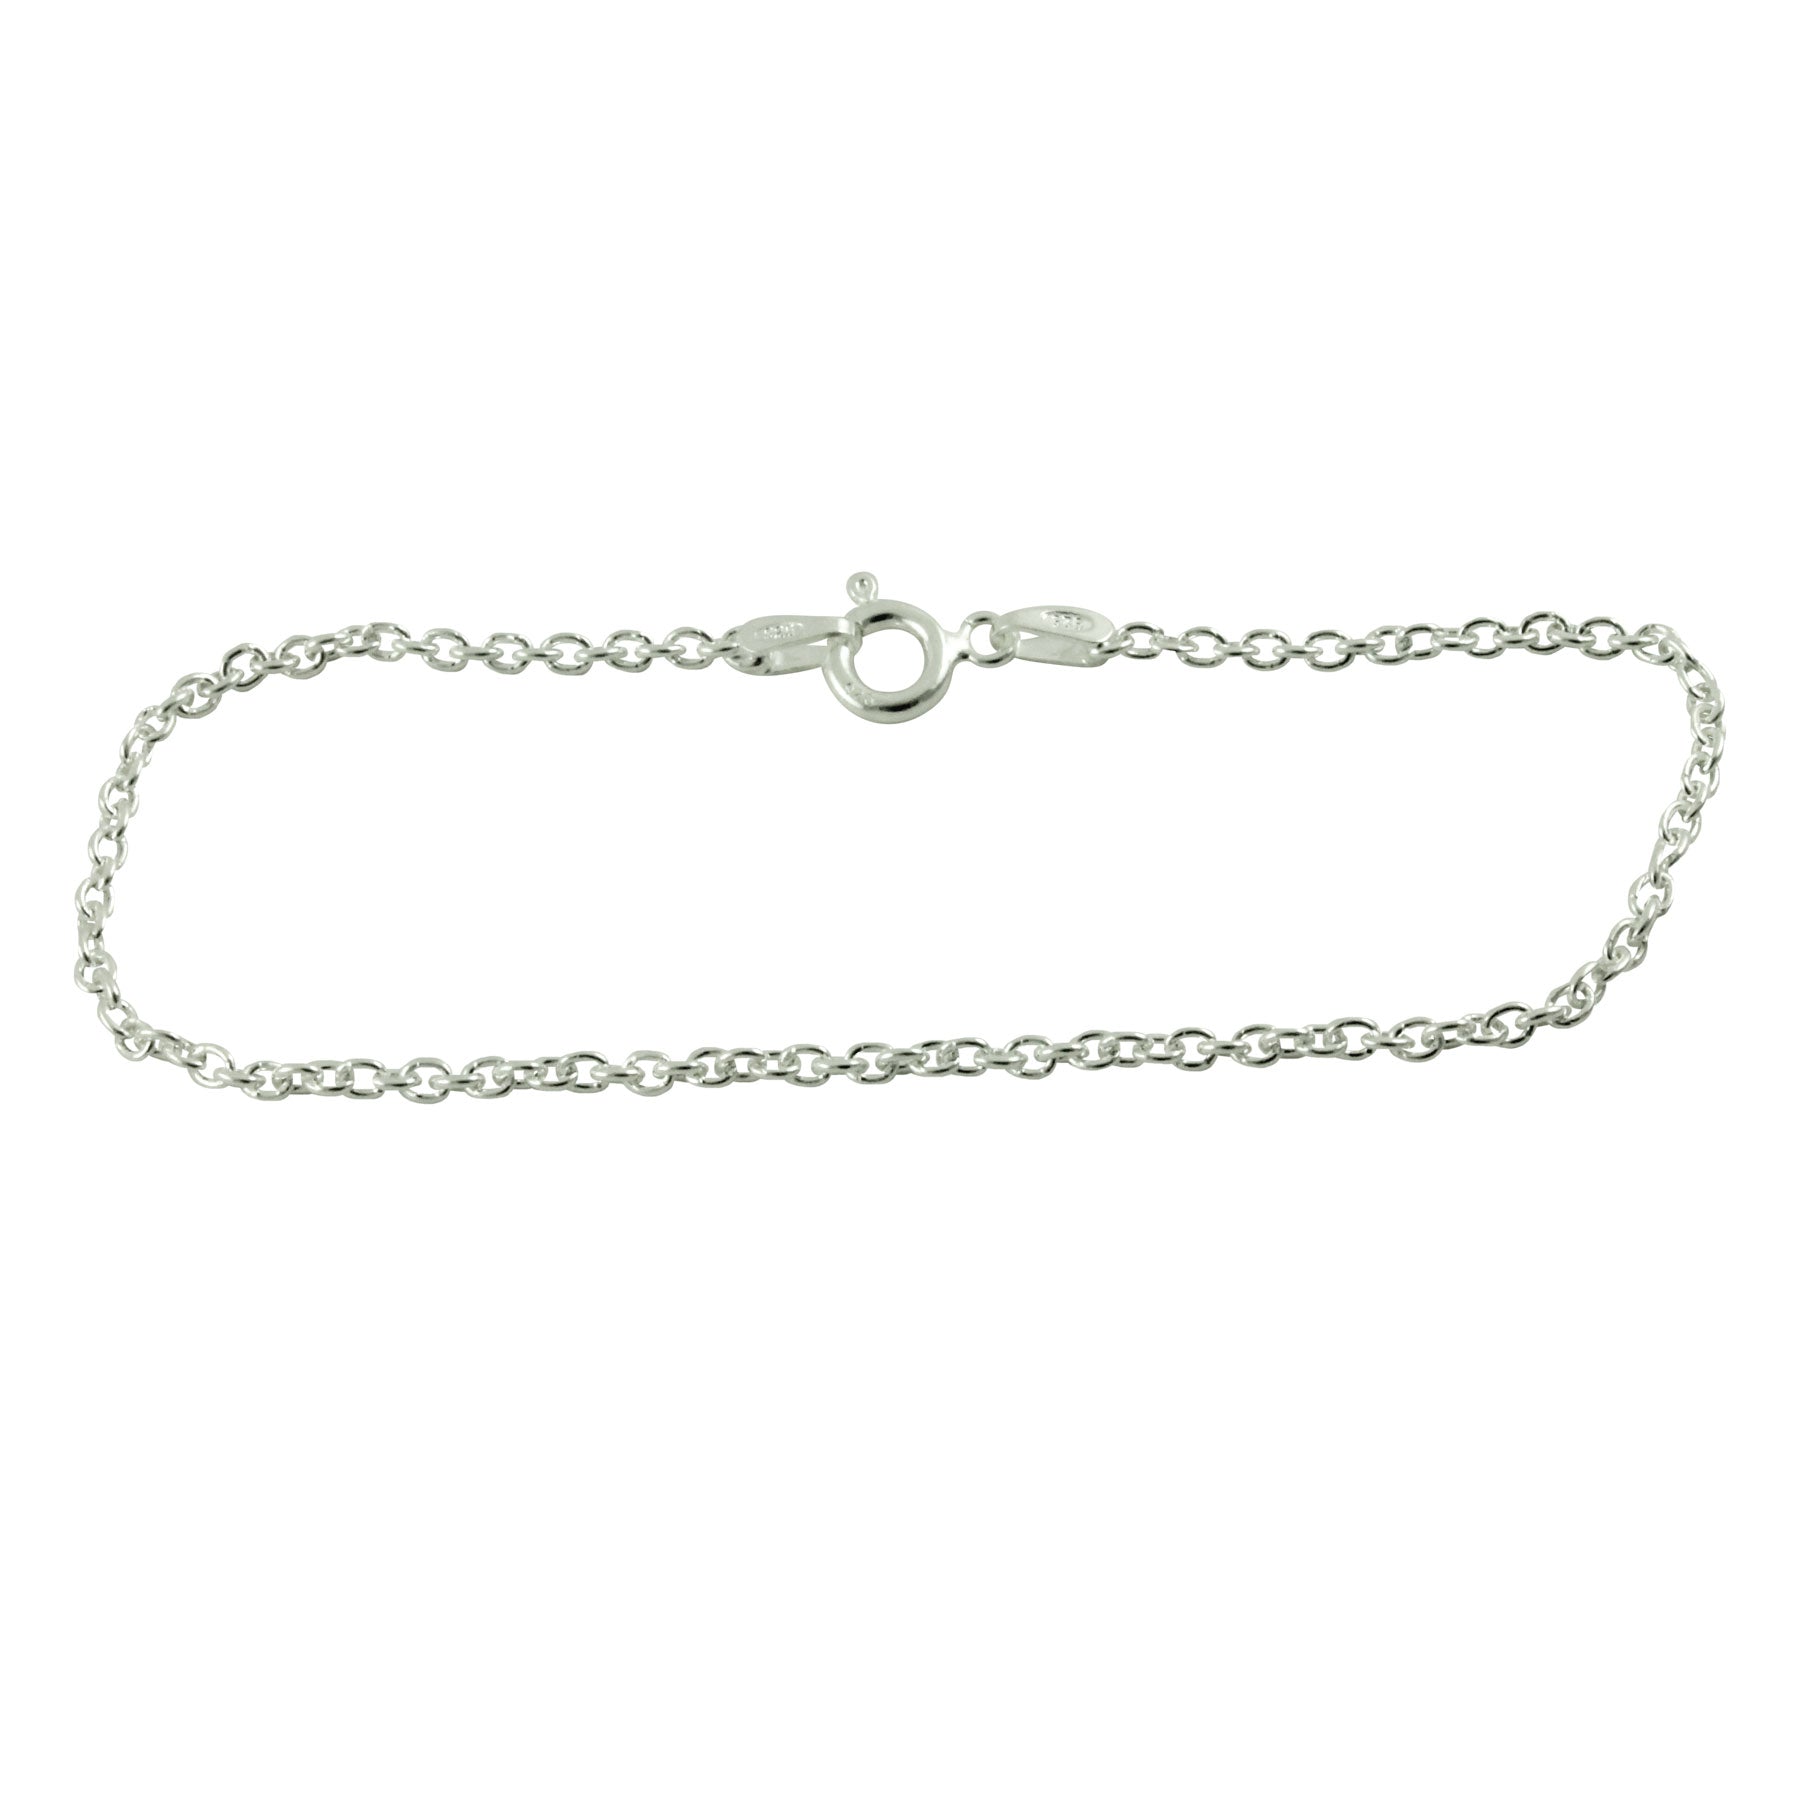 Sterling Dainty Chain Link Bracelet